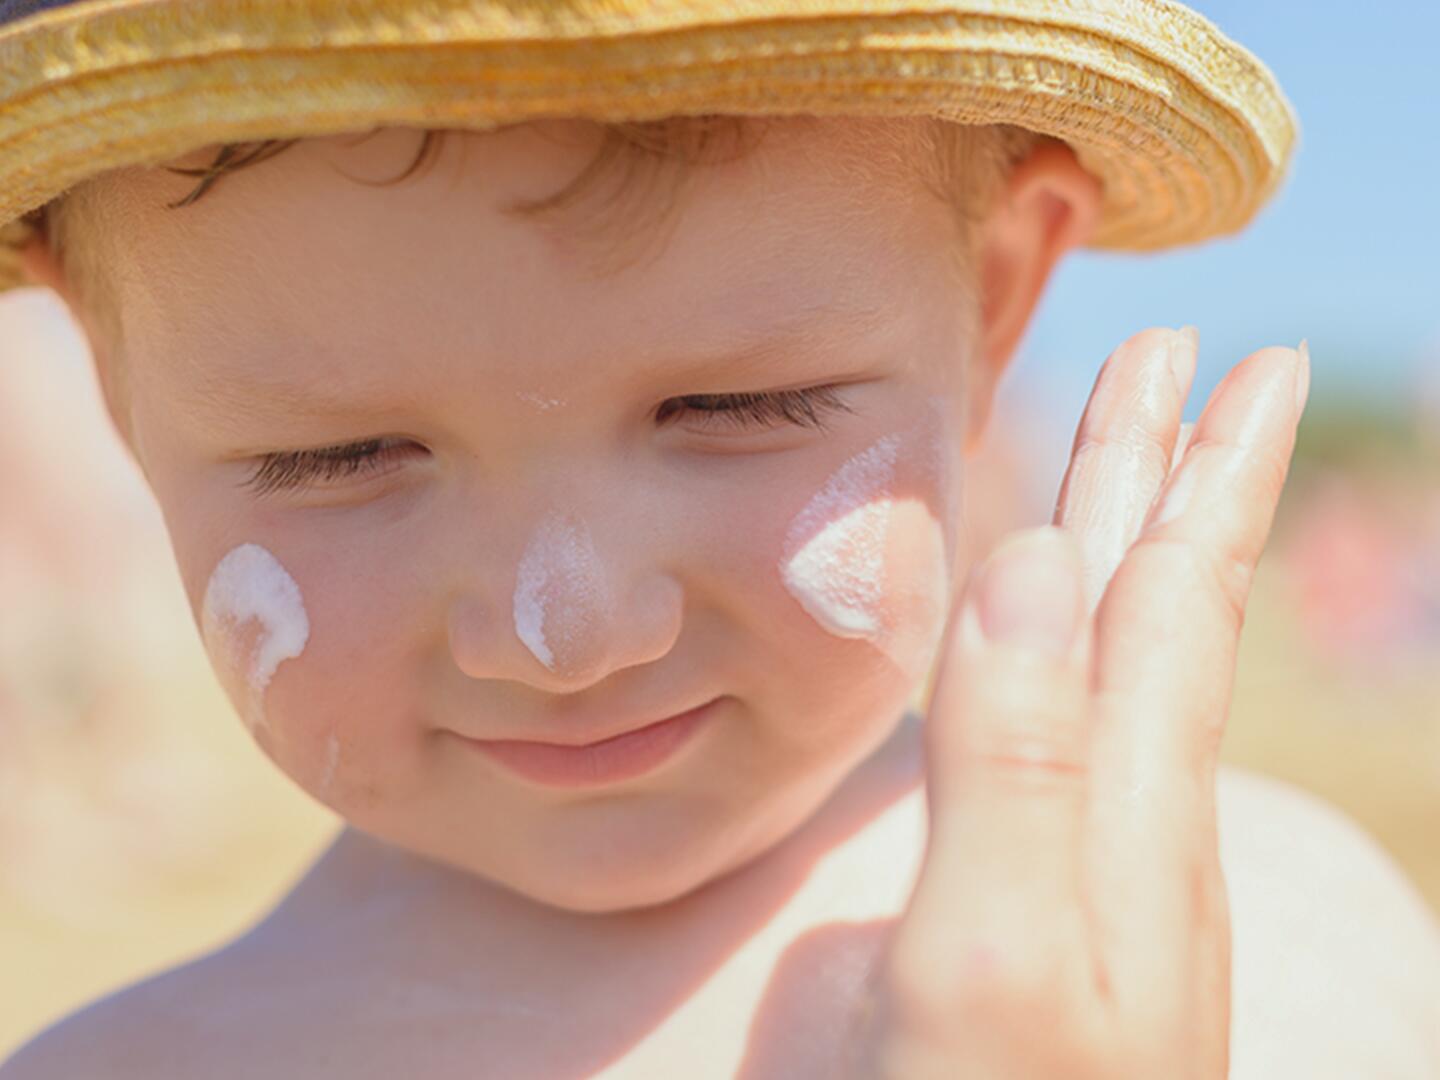 Sonnenschutz für Kinder – Informationen und Tipps